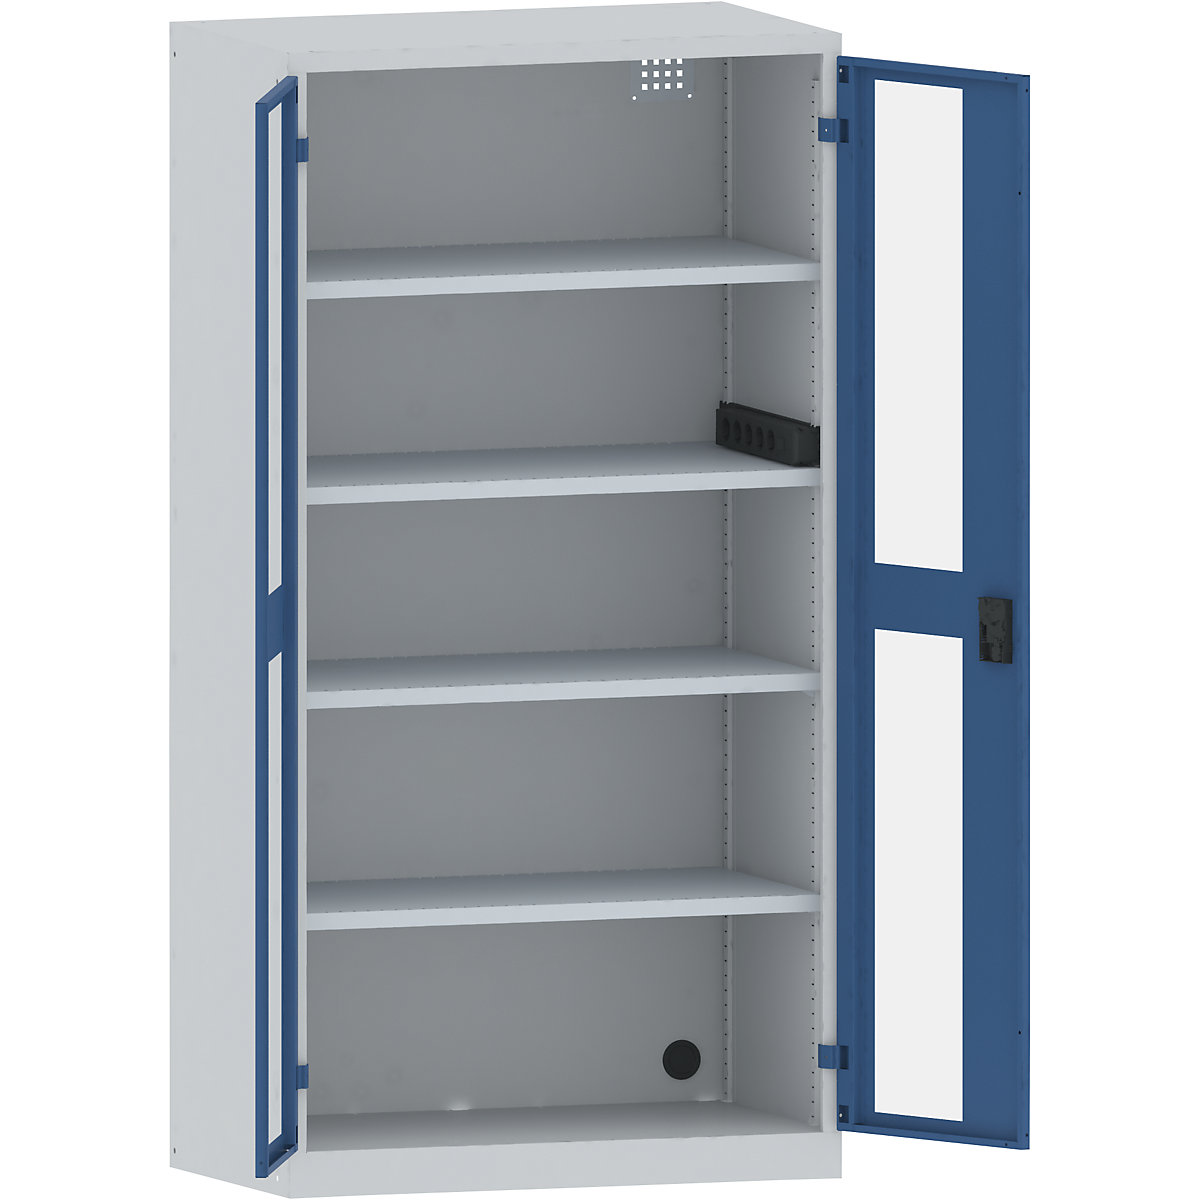 LISTA – Armario cargador de baterías, 4 baldas, puertas con ventanilla, regleta de enchufes lateral, gris / azul